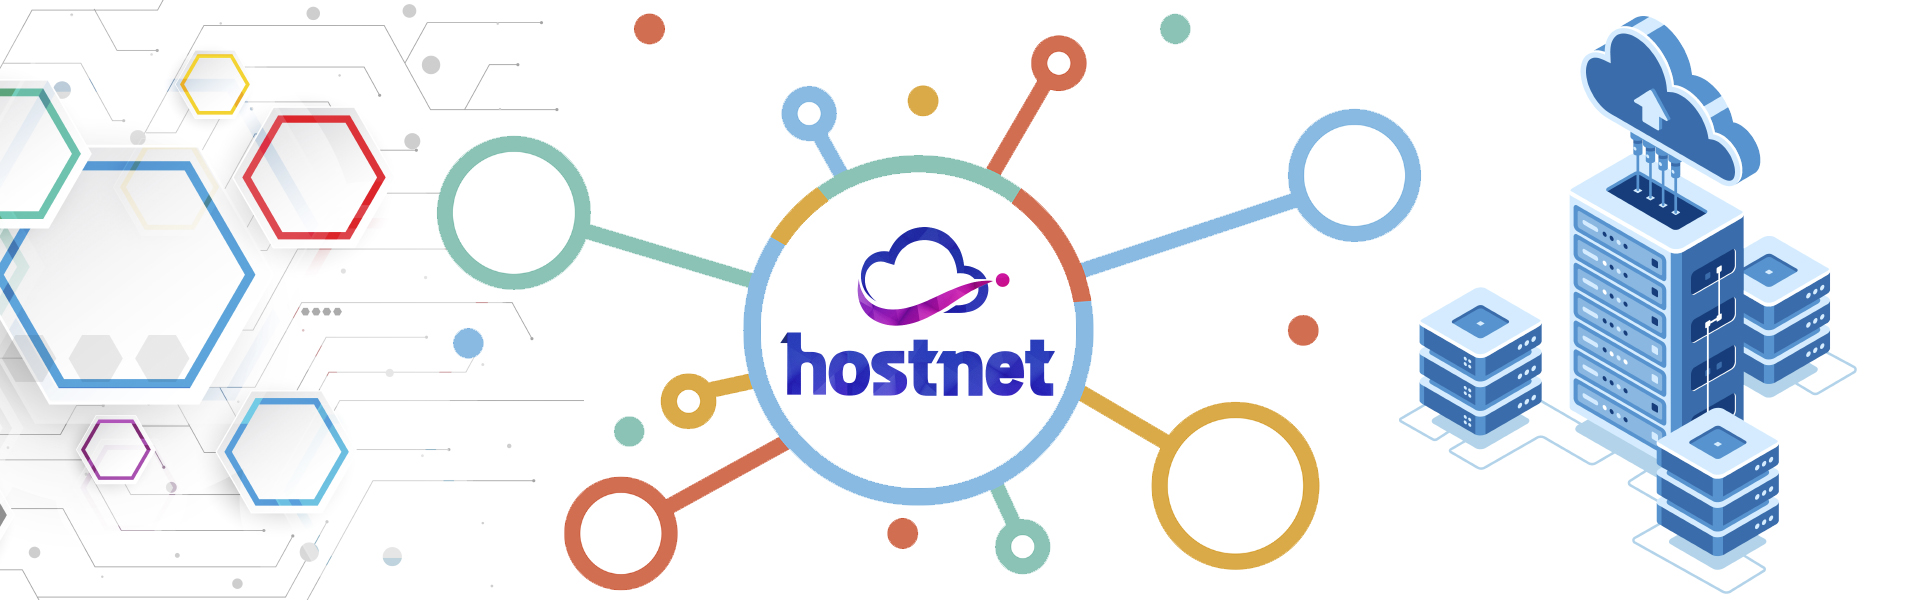 Estrutura Hostnet